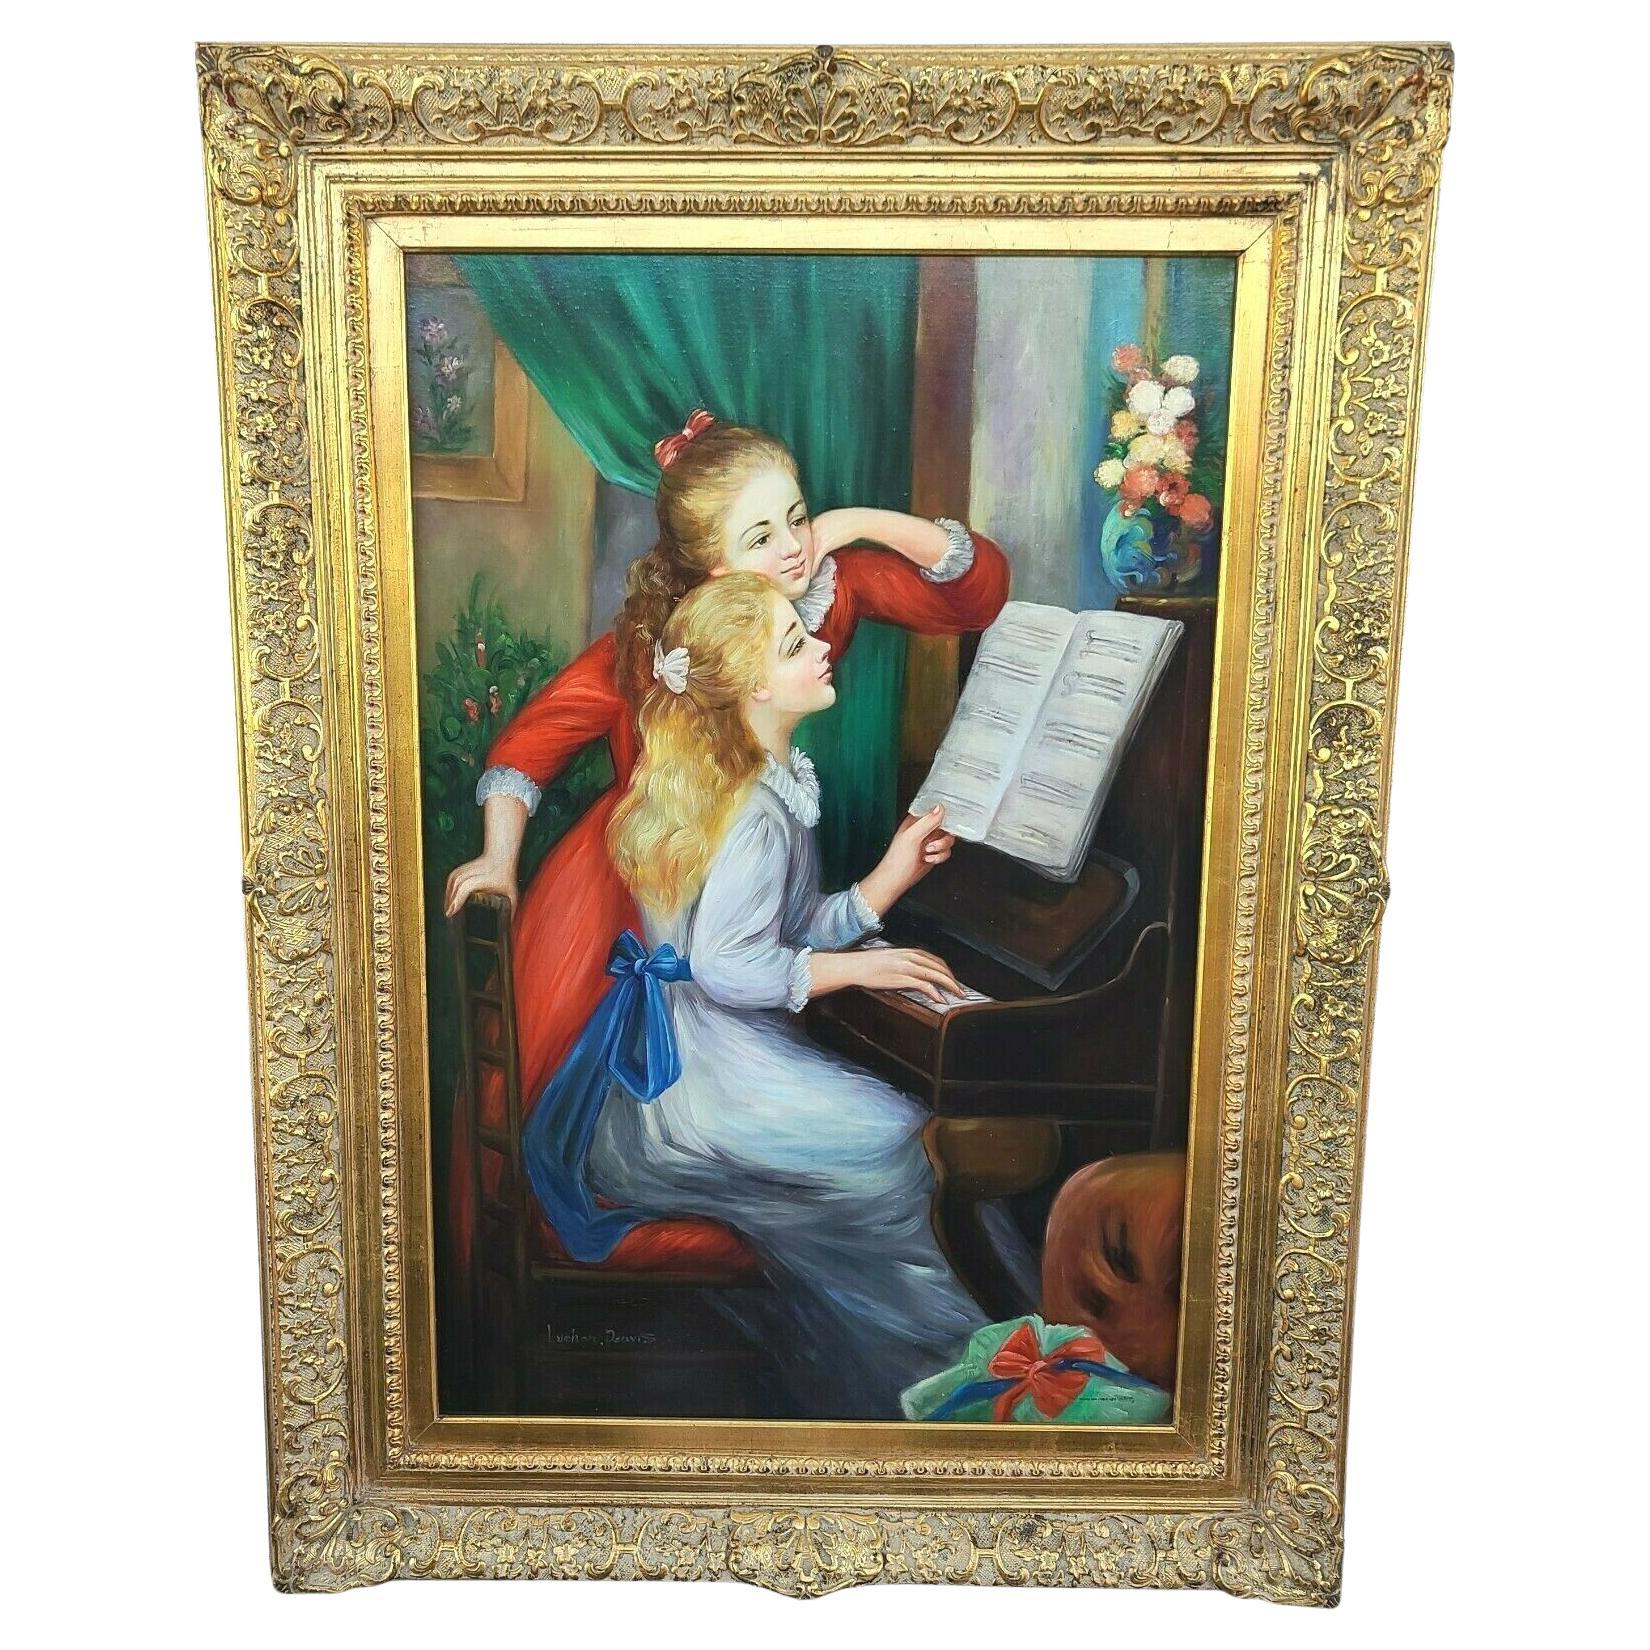 Signiertes Ölgemälde von Renoirs „“ Junge Mädchen am Klavier „“, gerahmt